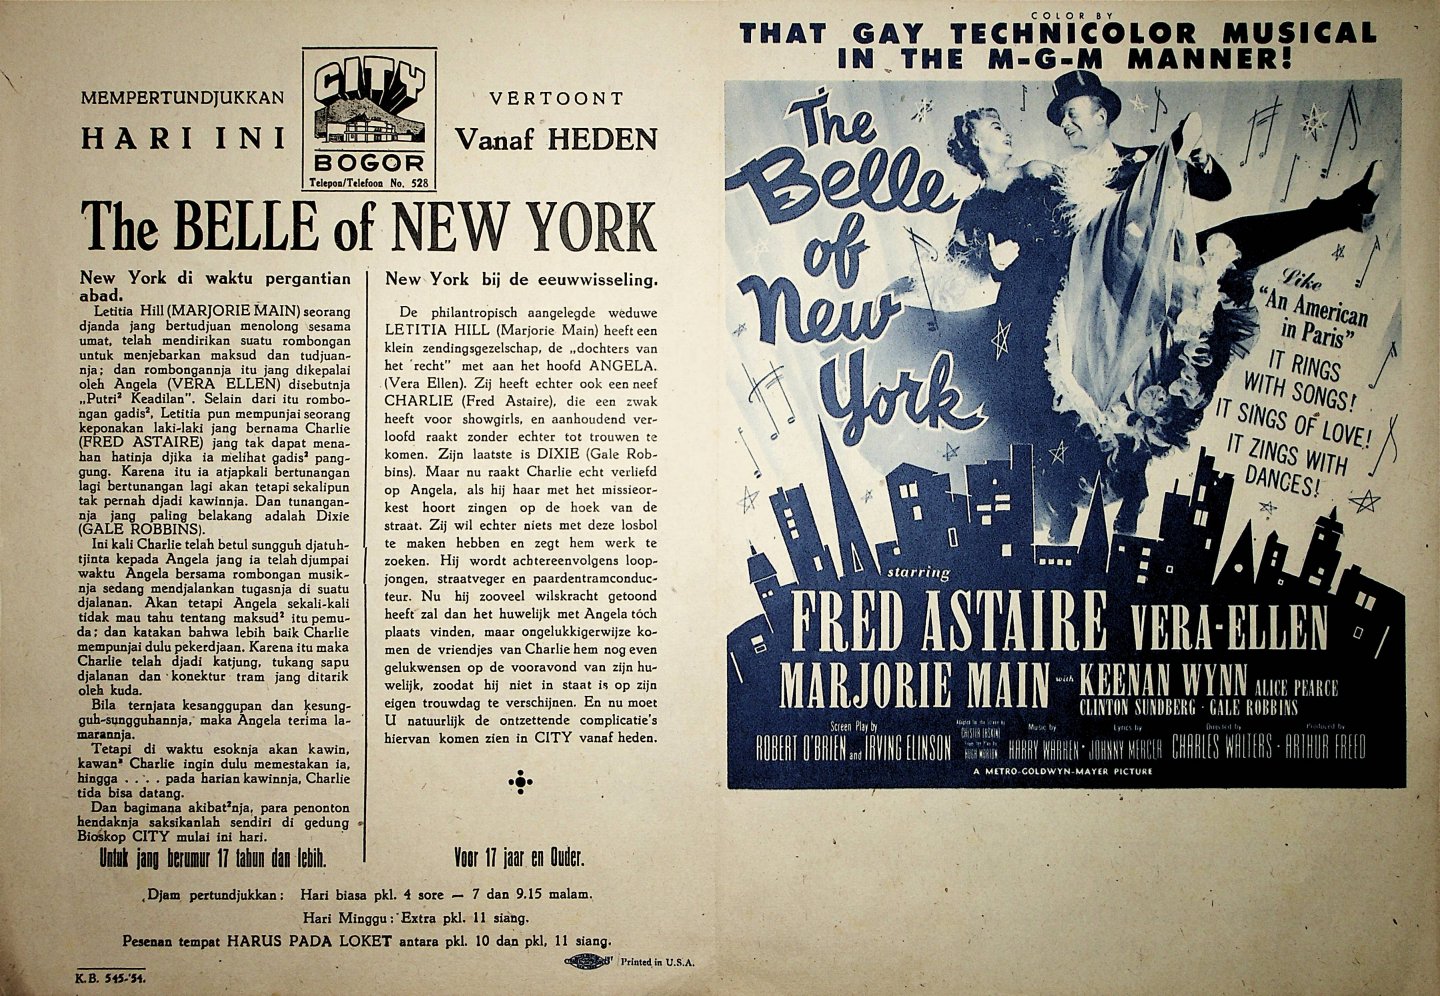 Astaire, Fred - Affiche voor de filmvertoning van de Amerikaanse film The Belle of New York, met Fred Astaire in de hoofdrol, in het City Theatre in Bogor Java).